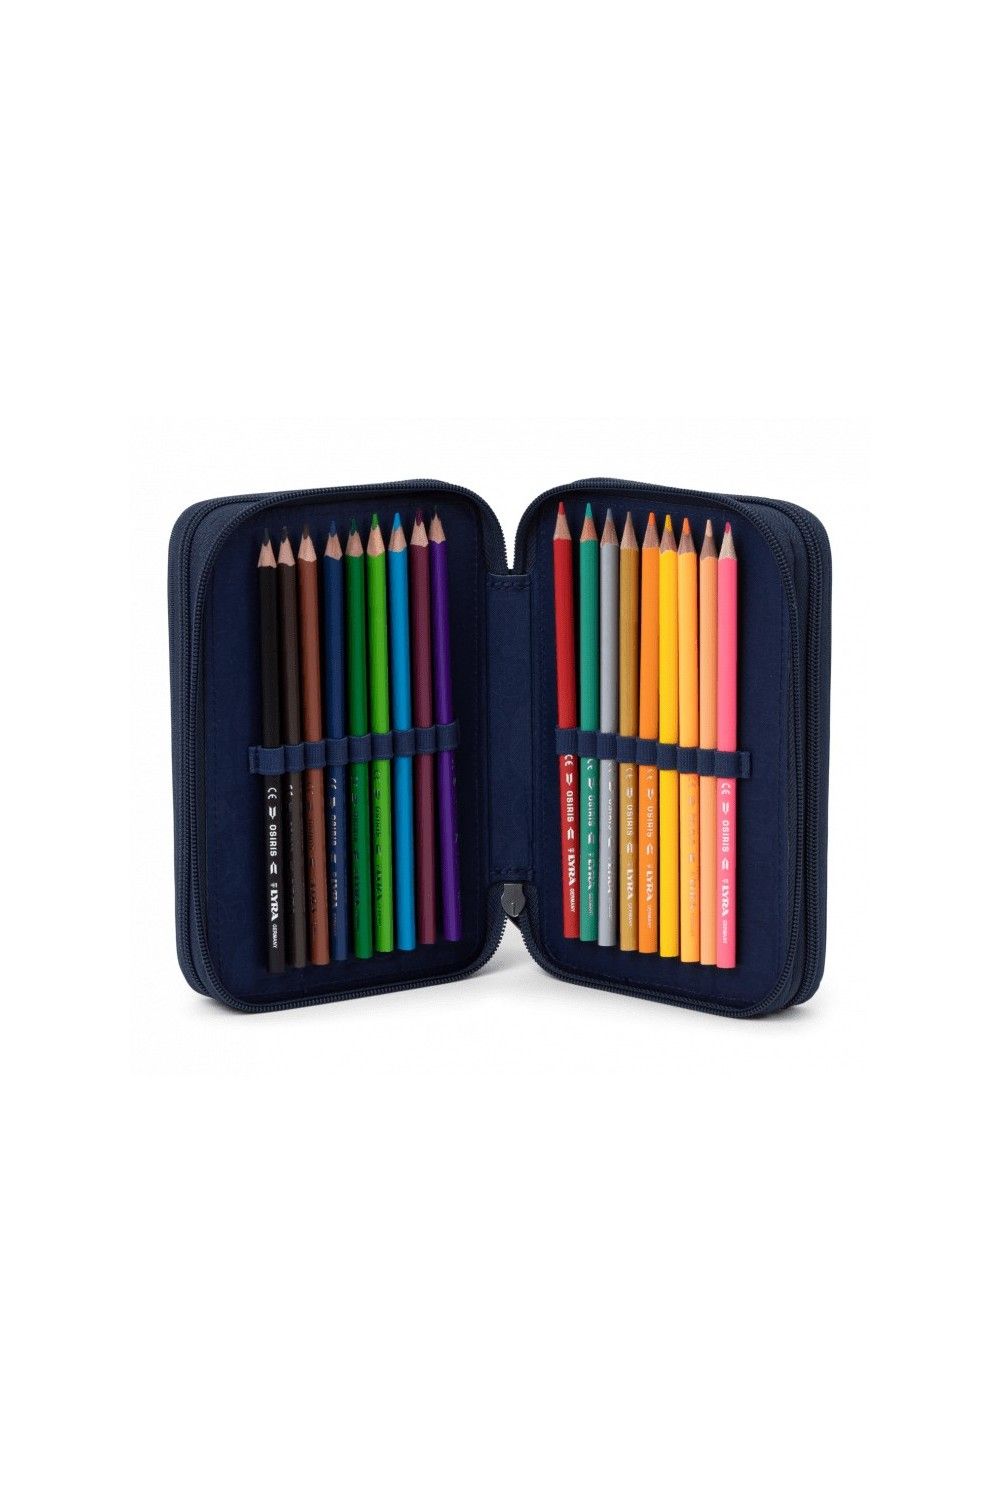 Ergobag maxi pencil case PerlentauchBär